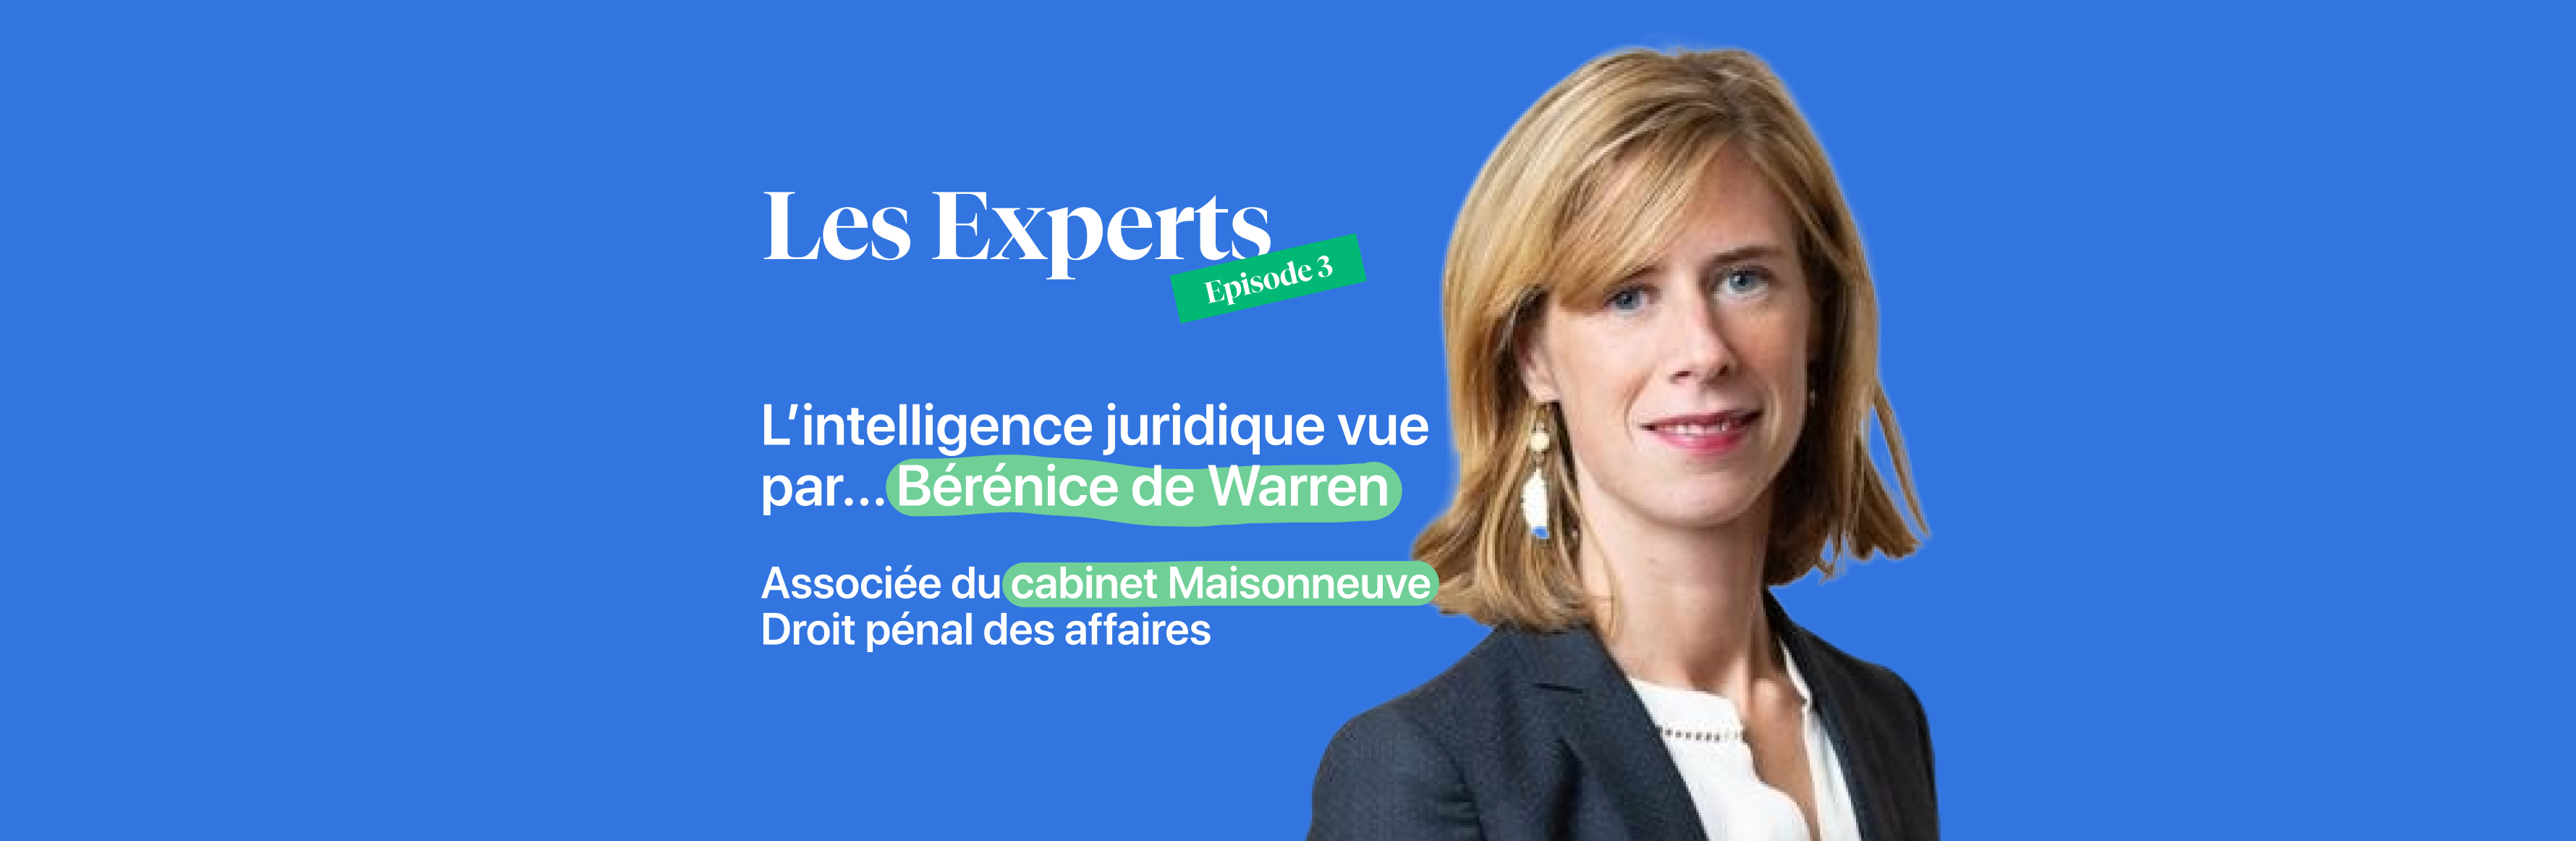 L'intelligence juridique vue par... Bérénice de Warren, associée du cabinet Maisonneuve